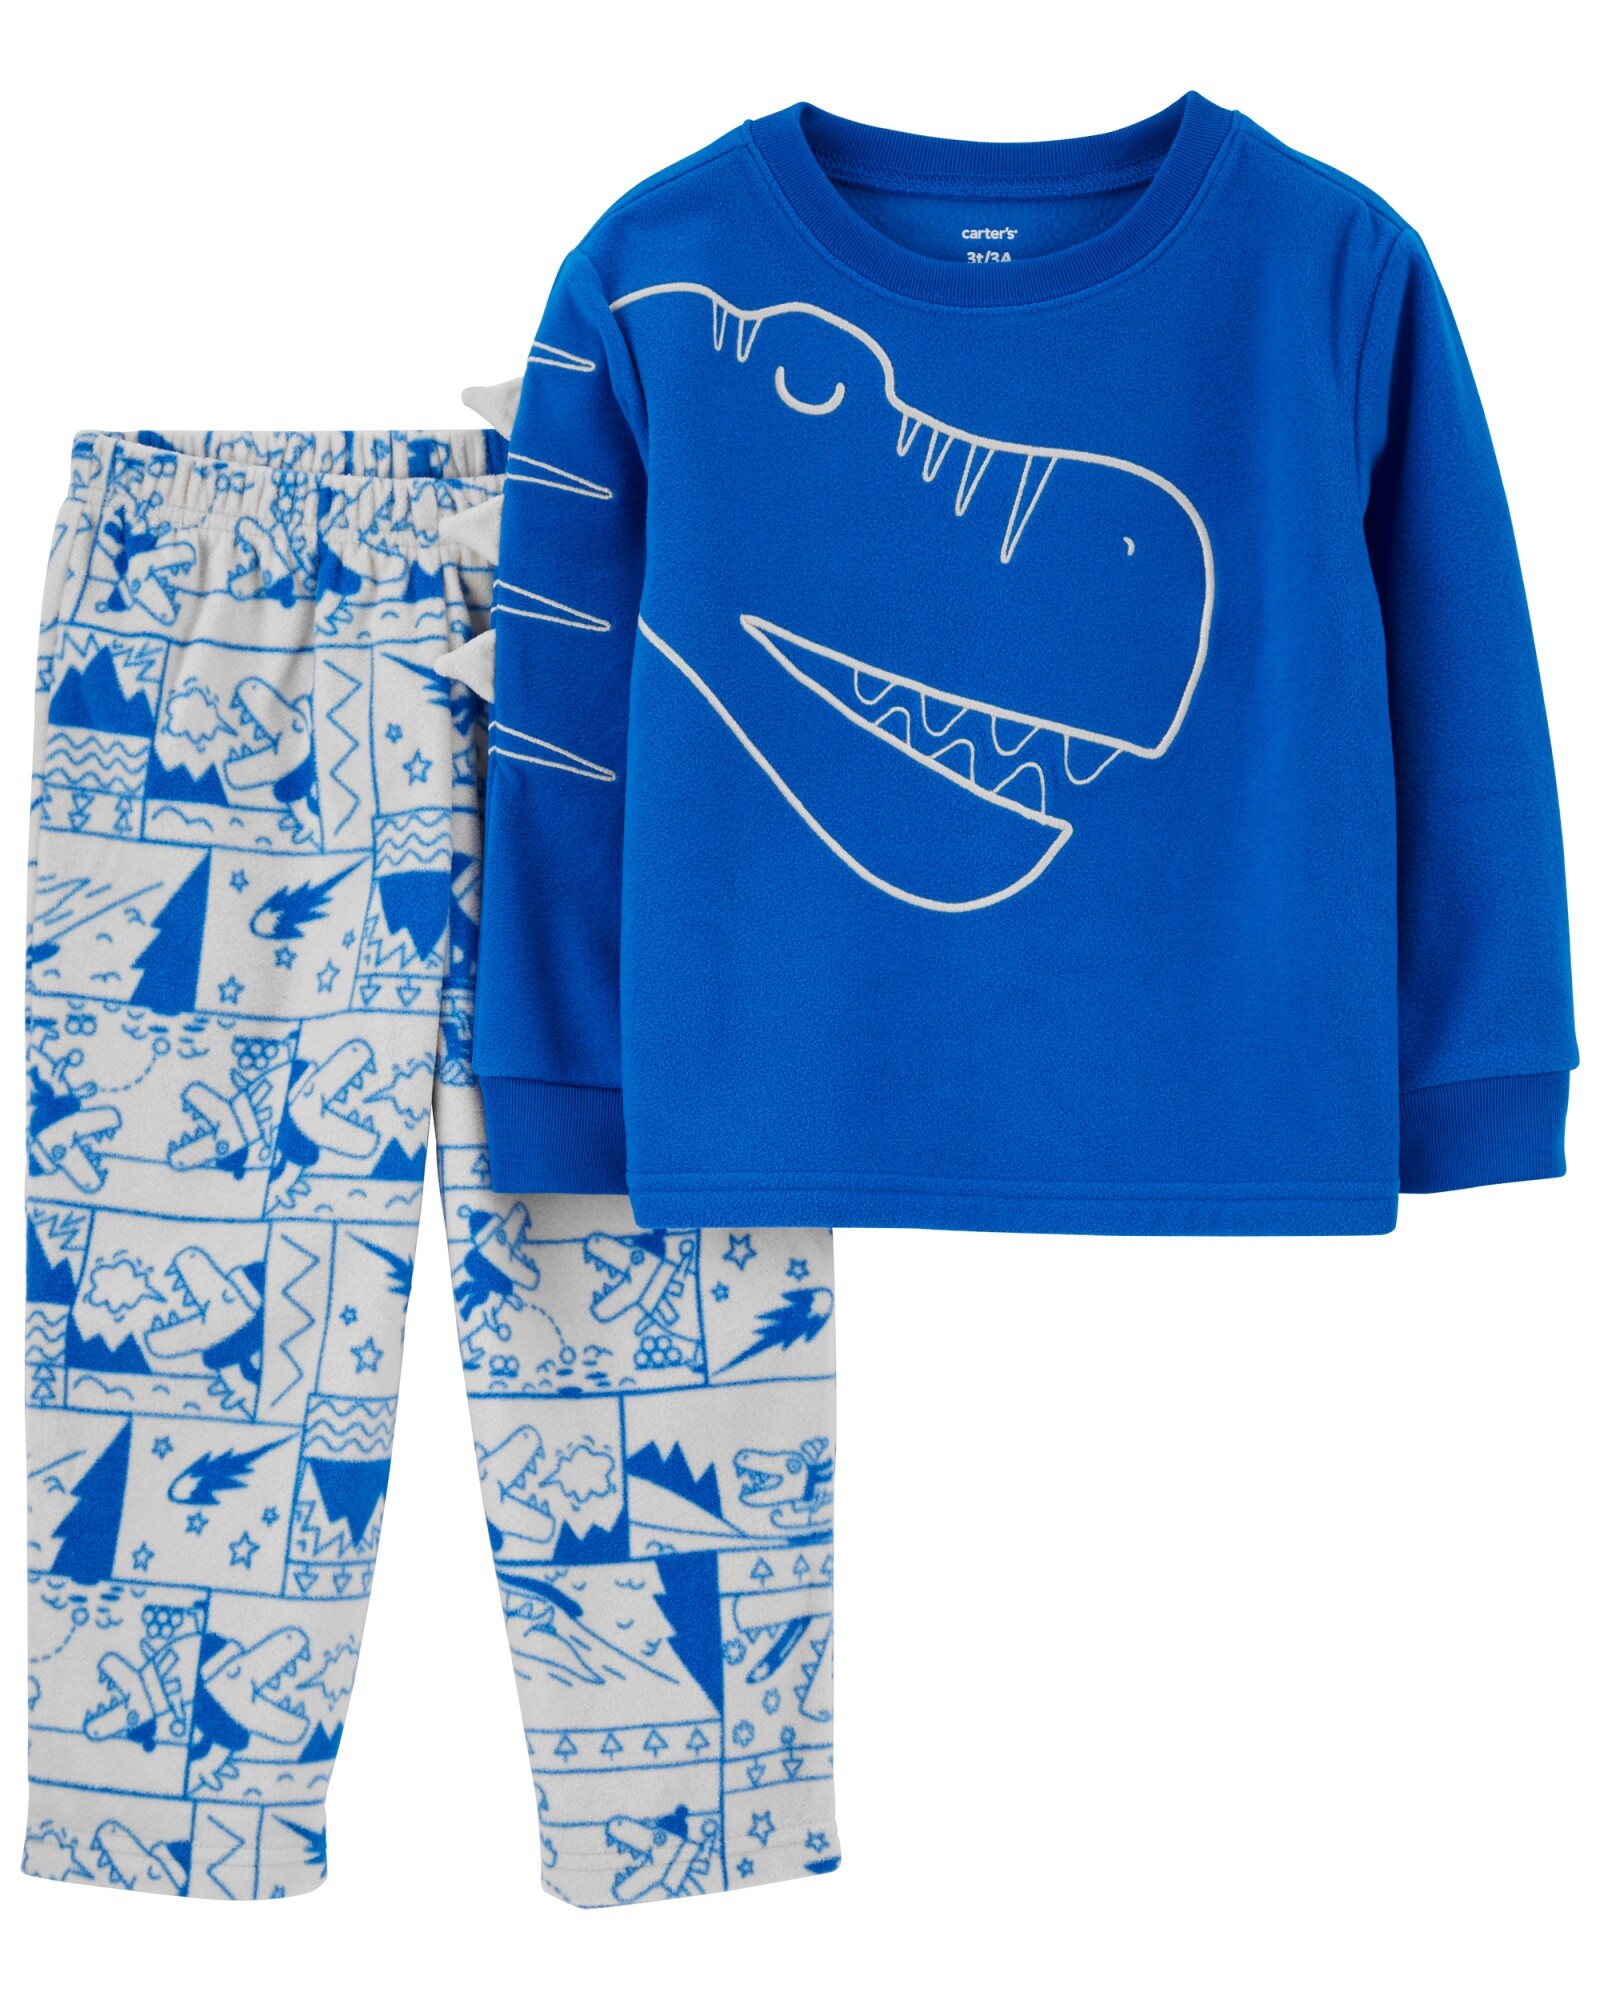 Pijama dos piezas pantalón y remera de micropolar diseño dino Sin color